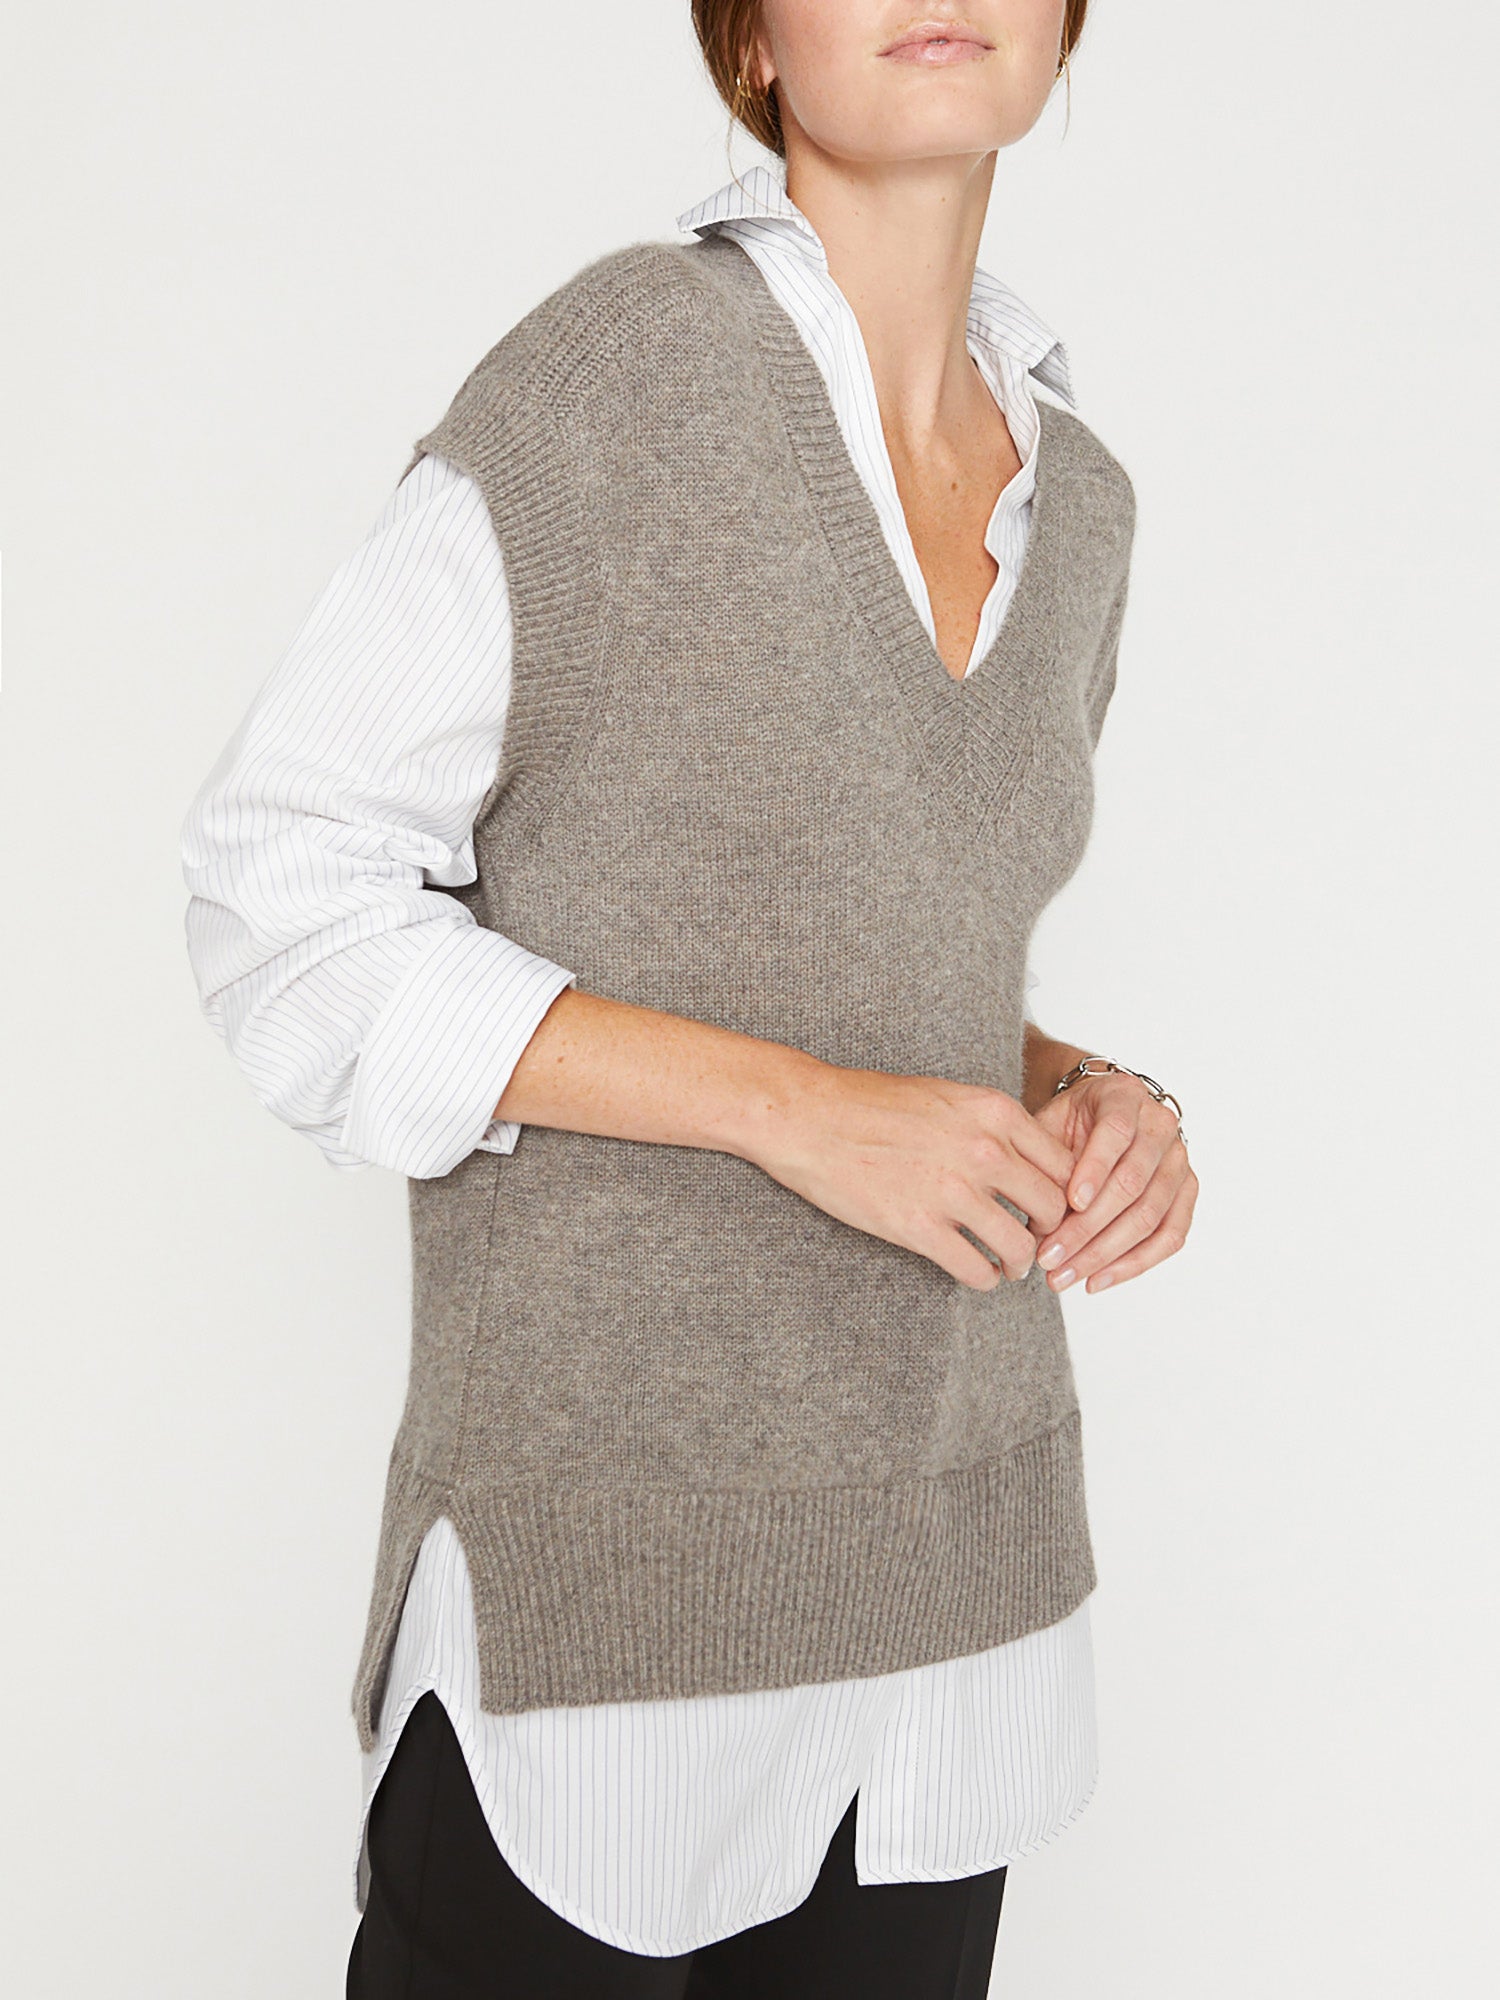 Brochu Walker Women's Nye Vest Layered Looker, Taupe/Stripe